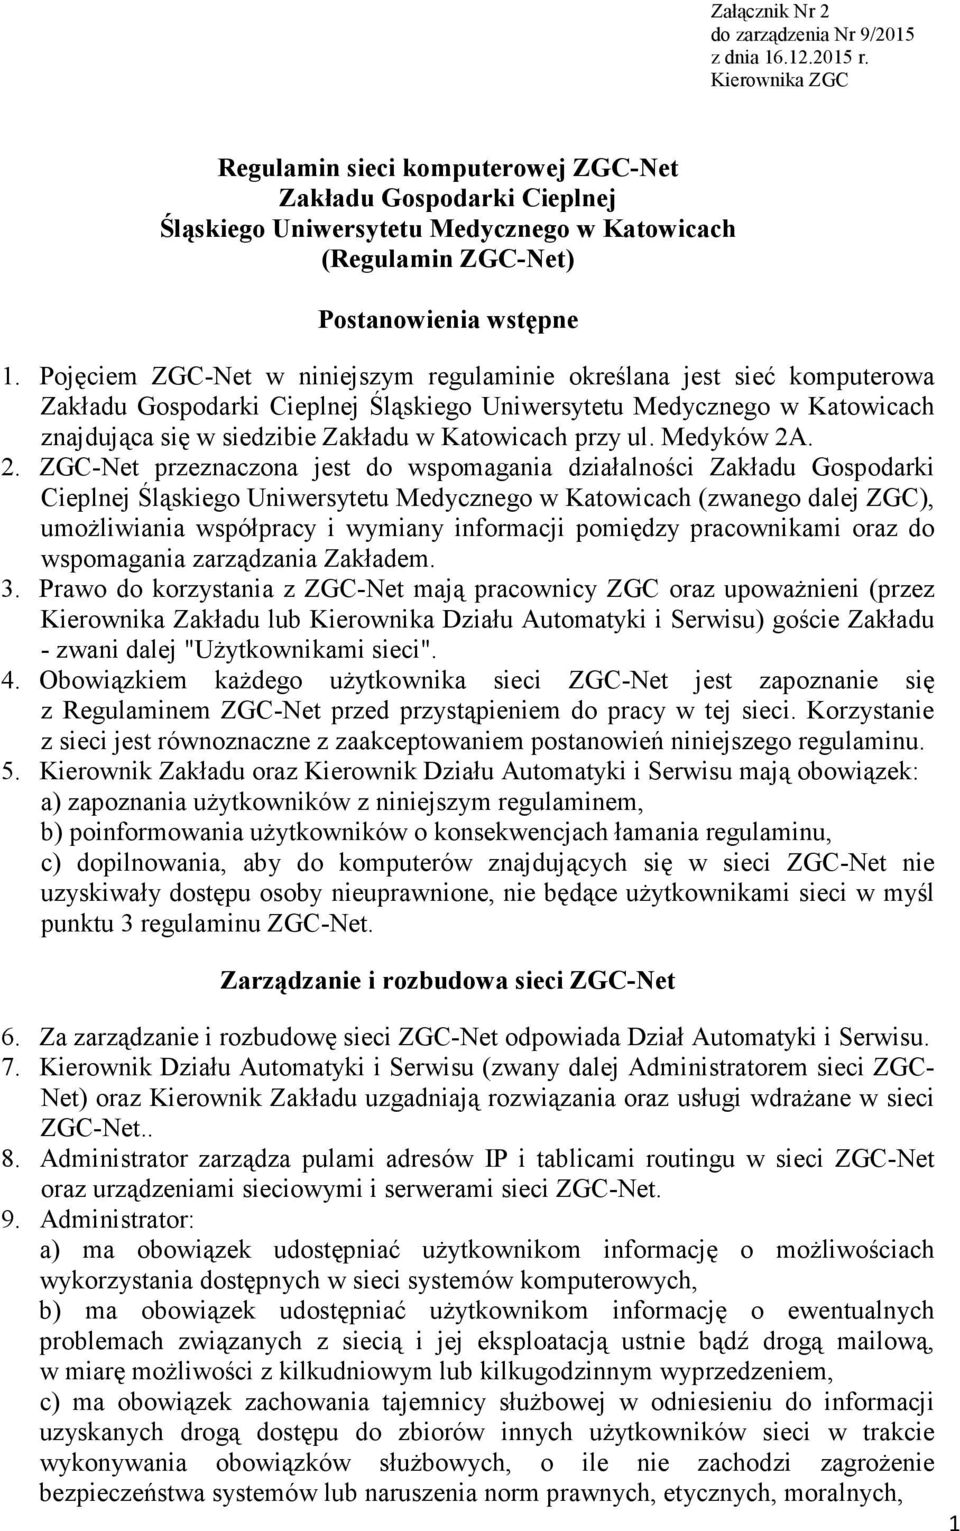 Pojęciem ZGC-Net w niniejszym regulaminie określana jest sieć komputerowa Zakładu Gospodarki Cieplnej Śląskiego Uniwersytetu Medycznego w Katowicach znajdująca się w siedzibie Zakładu w Katowicach